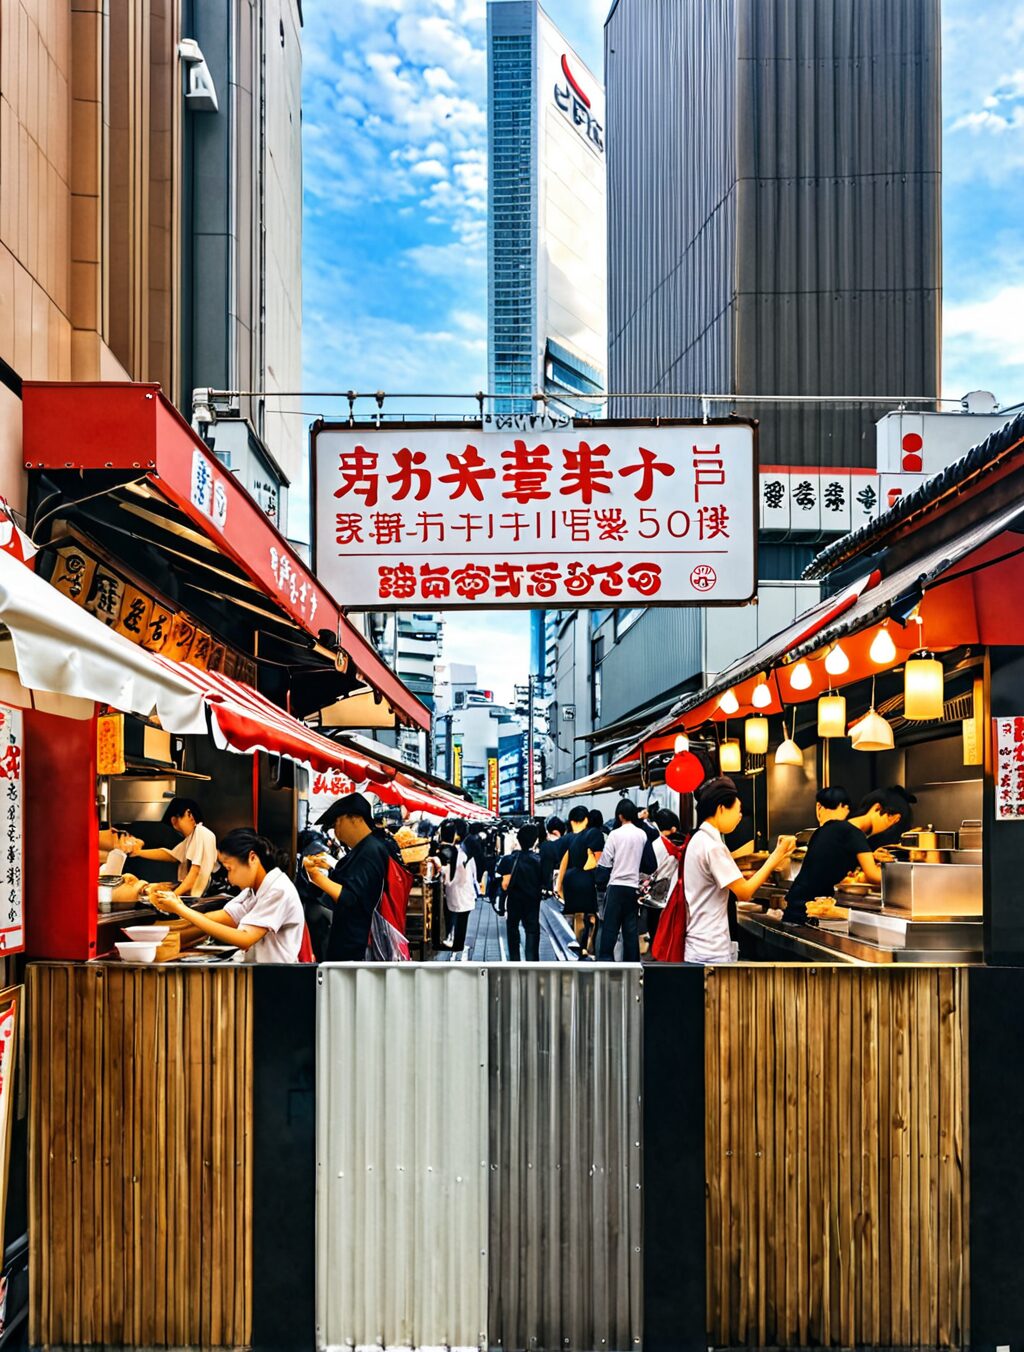 japan street food tokyo